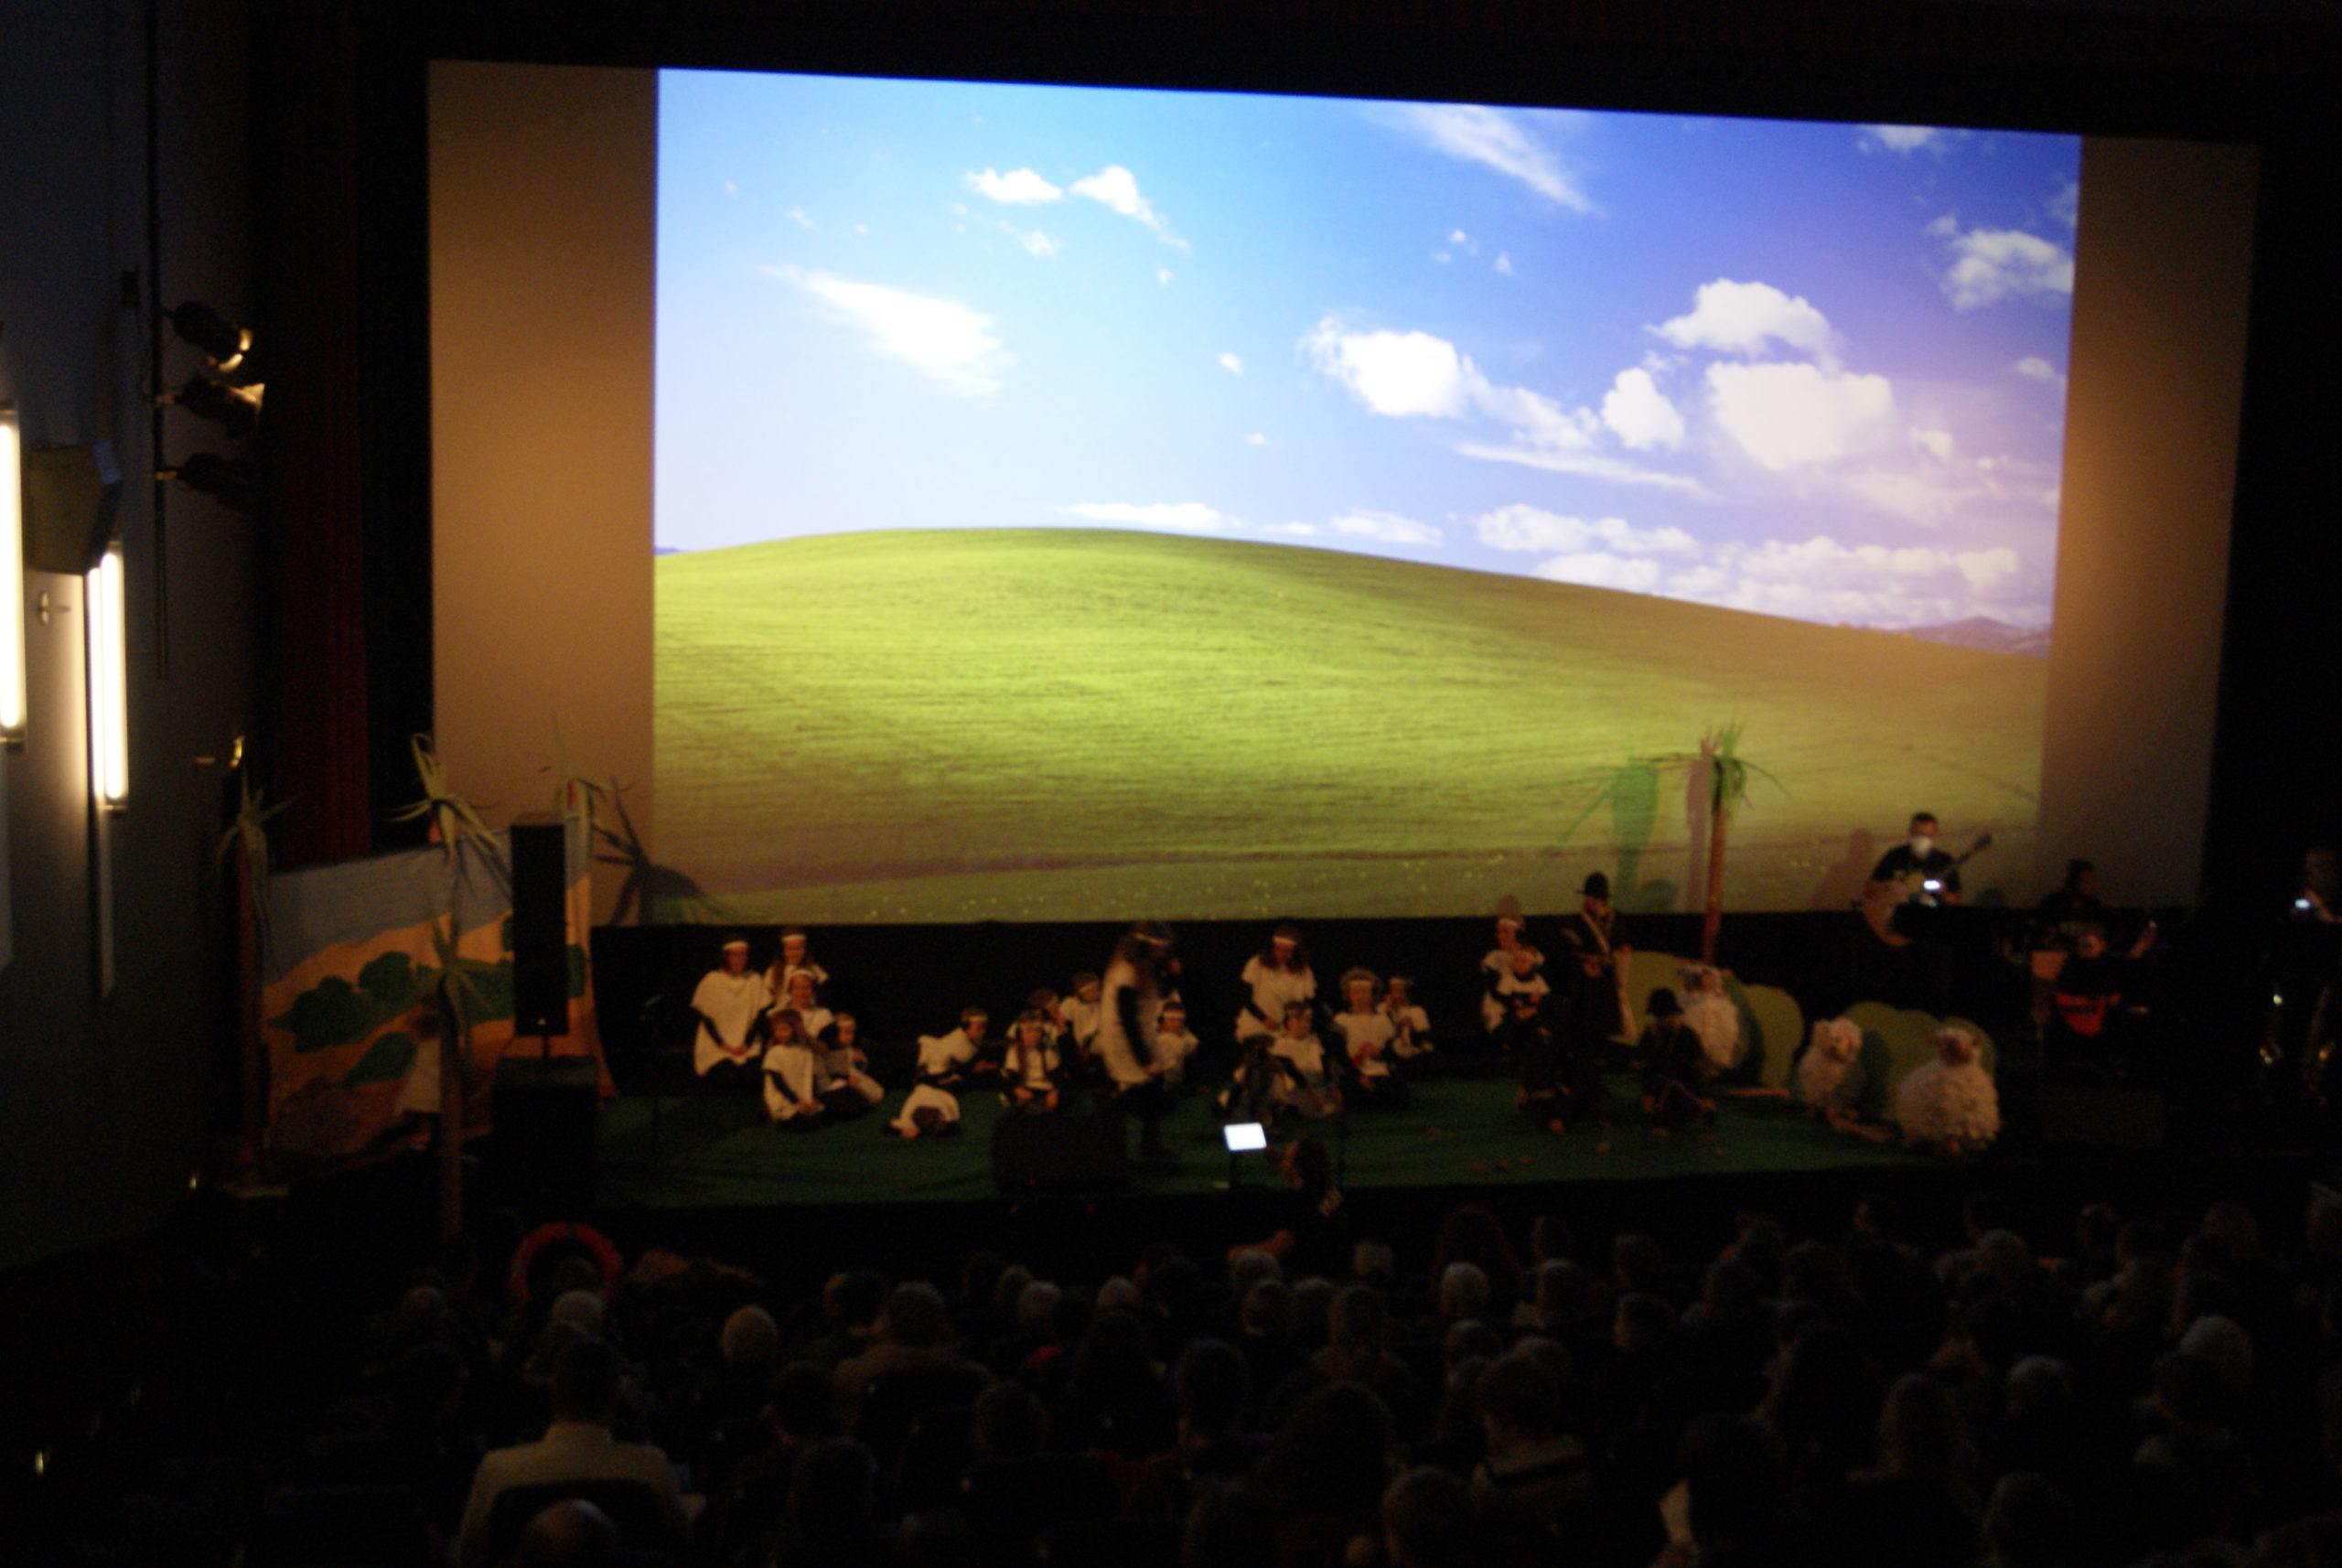 Blick in den Kinosaal: Auf der Leinwand eine grüne Wiese vor einem blauen Himmel. Vor der Leinwand sitzen Schafe und Hirten auf der Wiese.